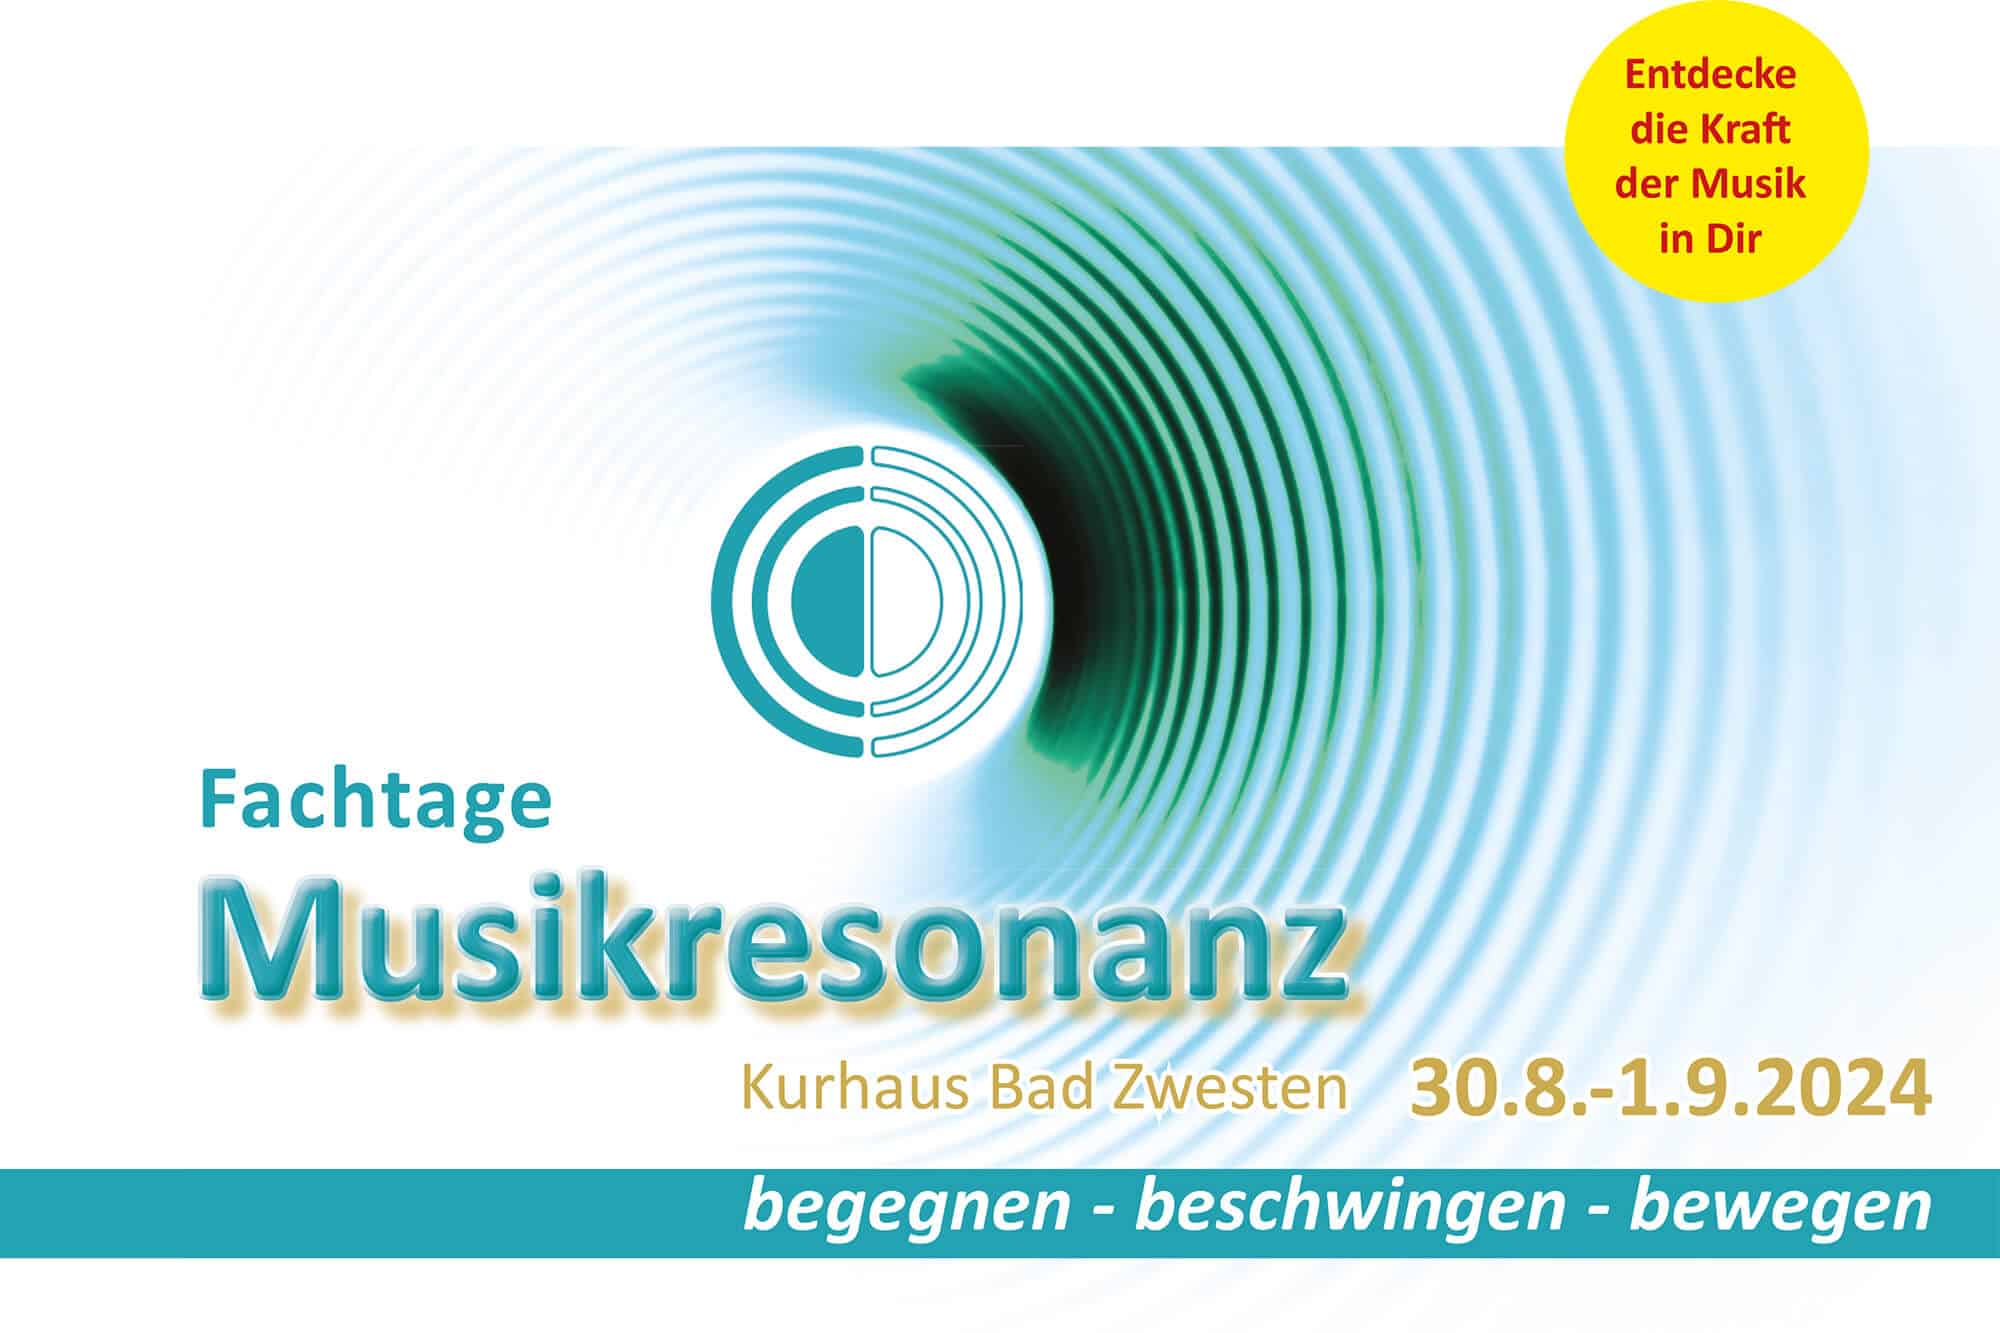 Plakat zur Fachtagung Musikresonanz 2024 in Bad Zwesten